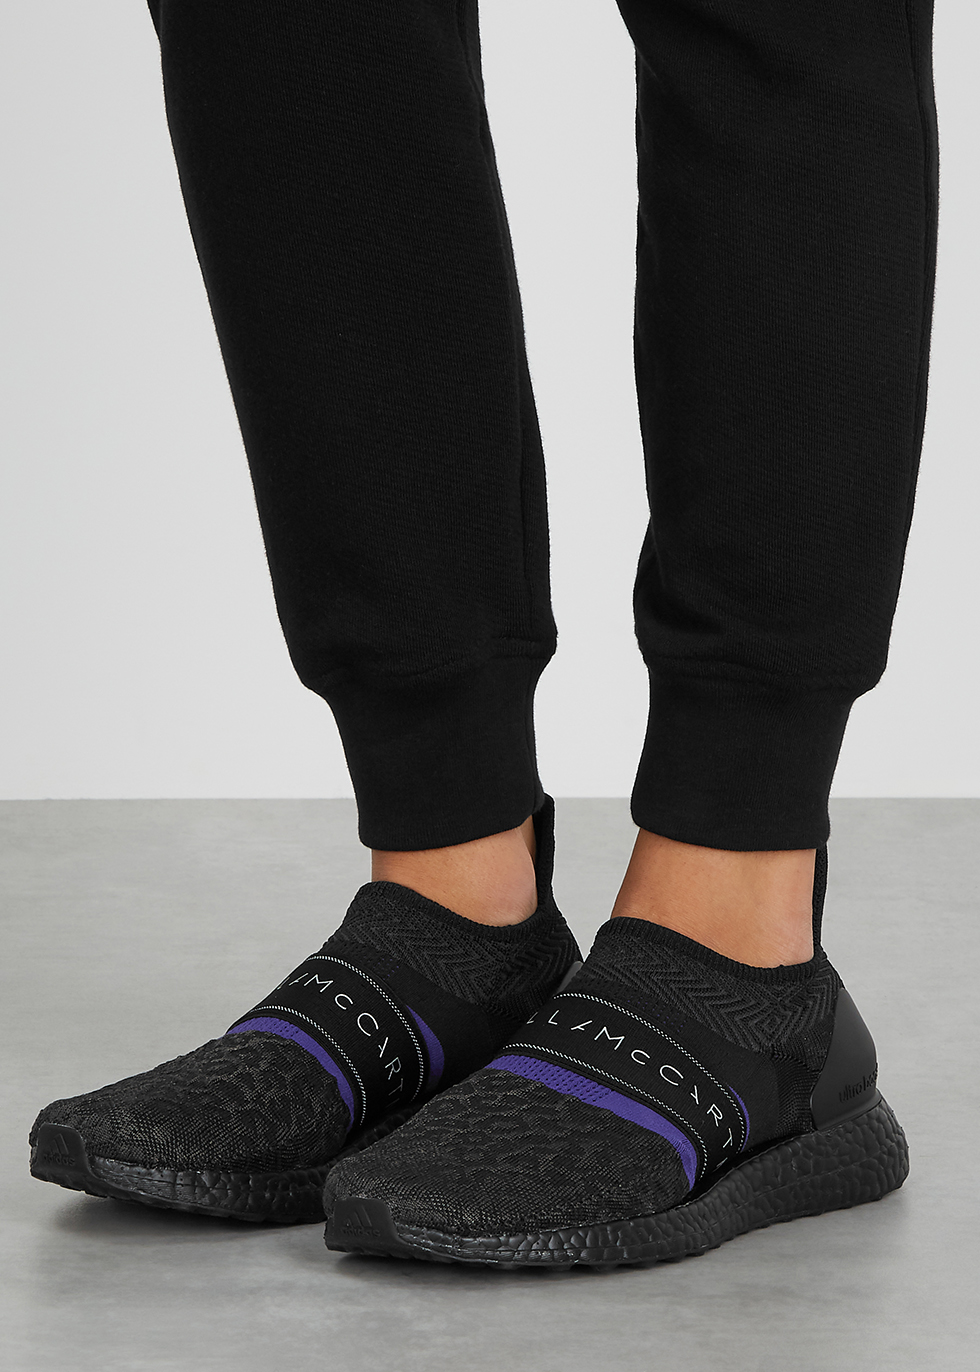 Adidas By Stella Mccartney Women's Ultraboost X Sneakers Hot Sale ...